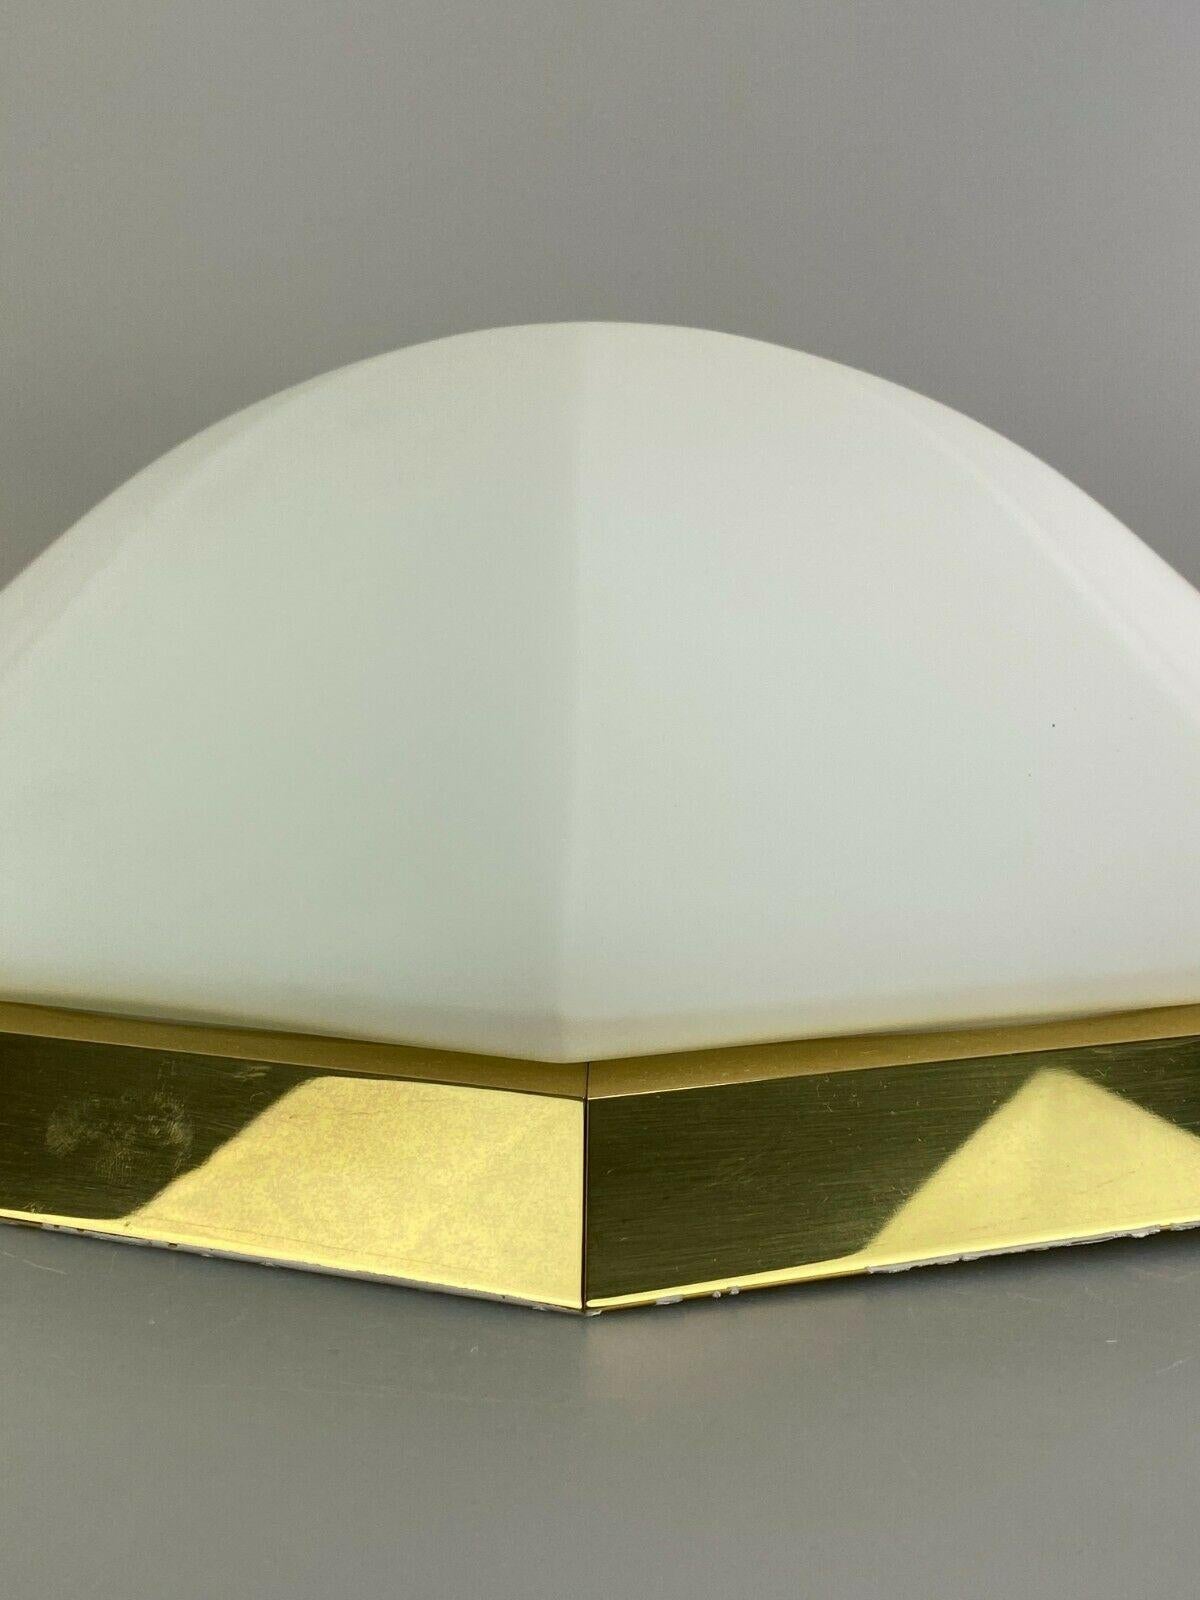 70s Limburg Glashütte Plafoniere Ceiling Lamp Glass Space Design Lamp For Sale 2